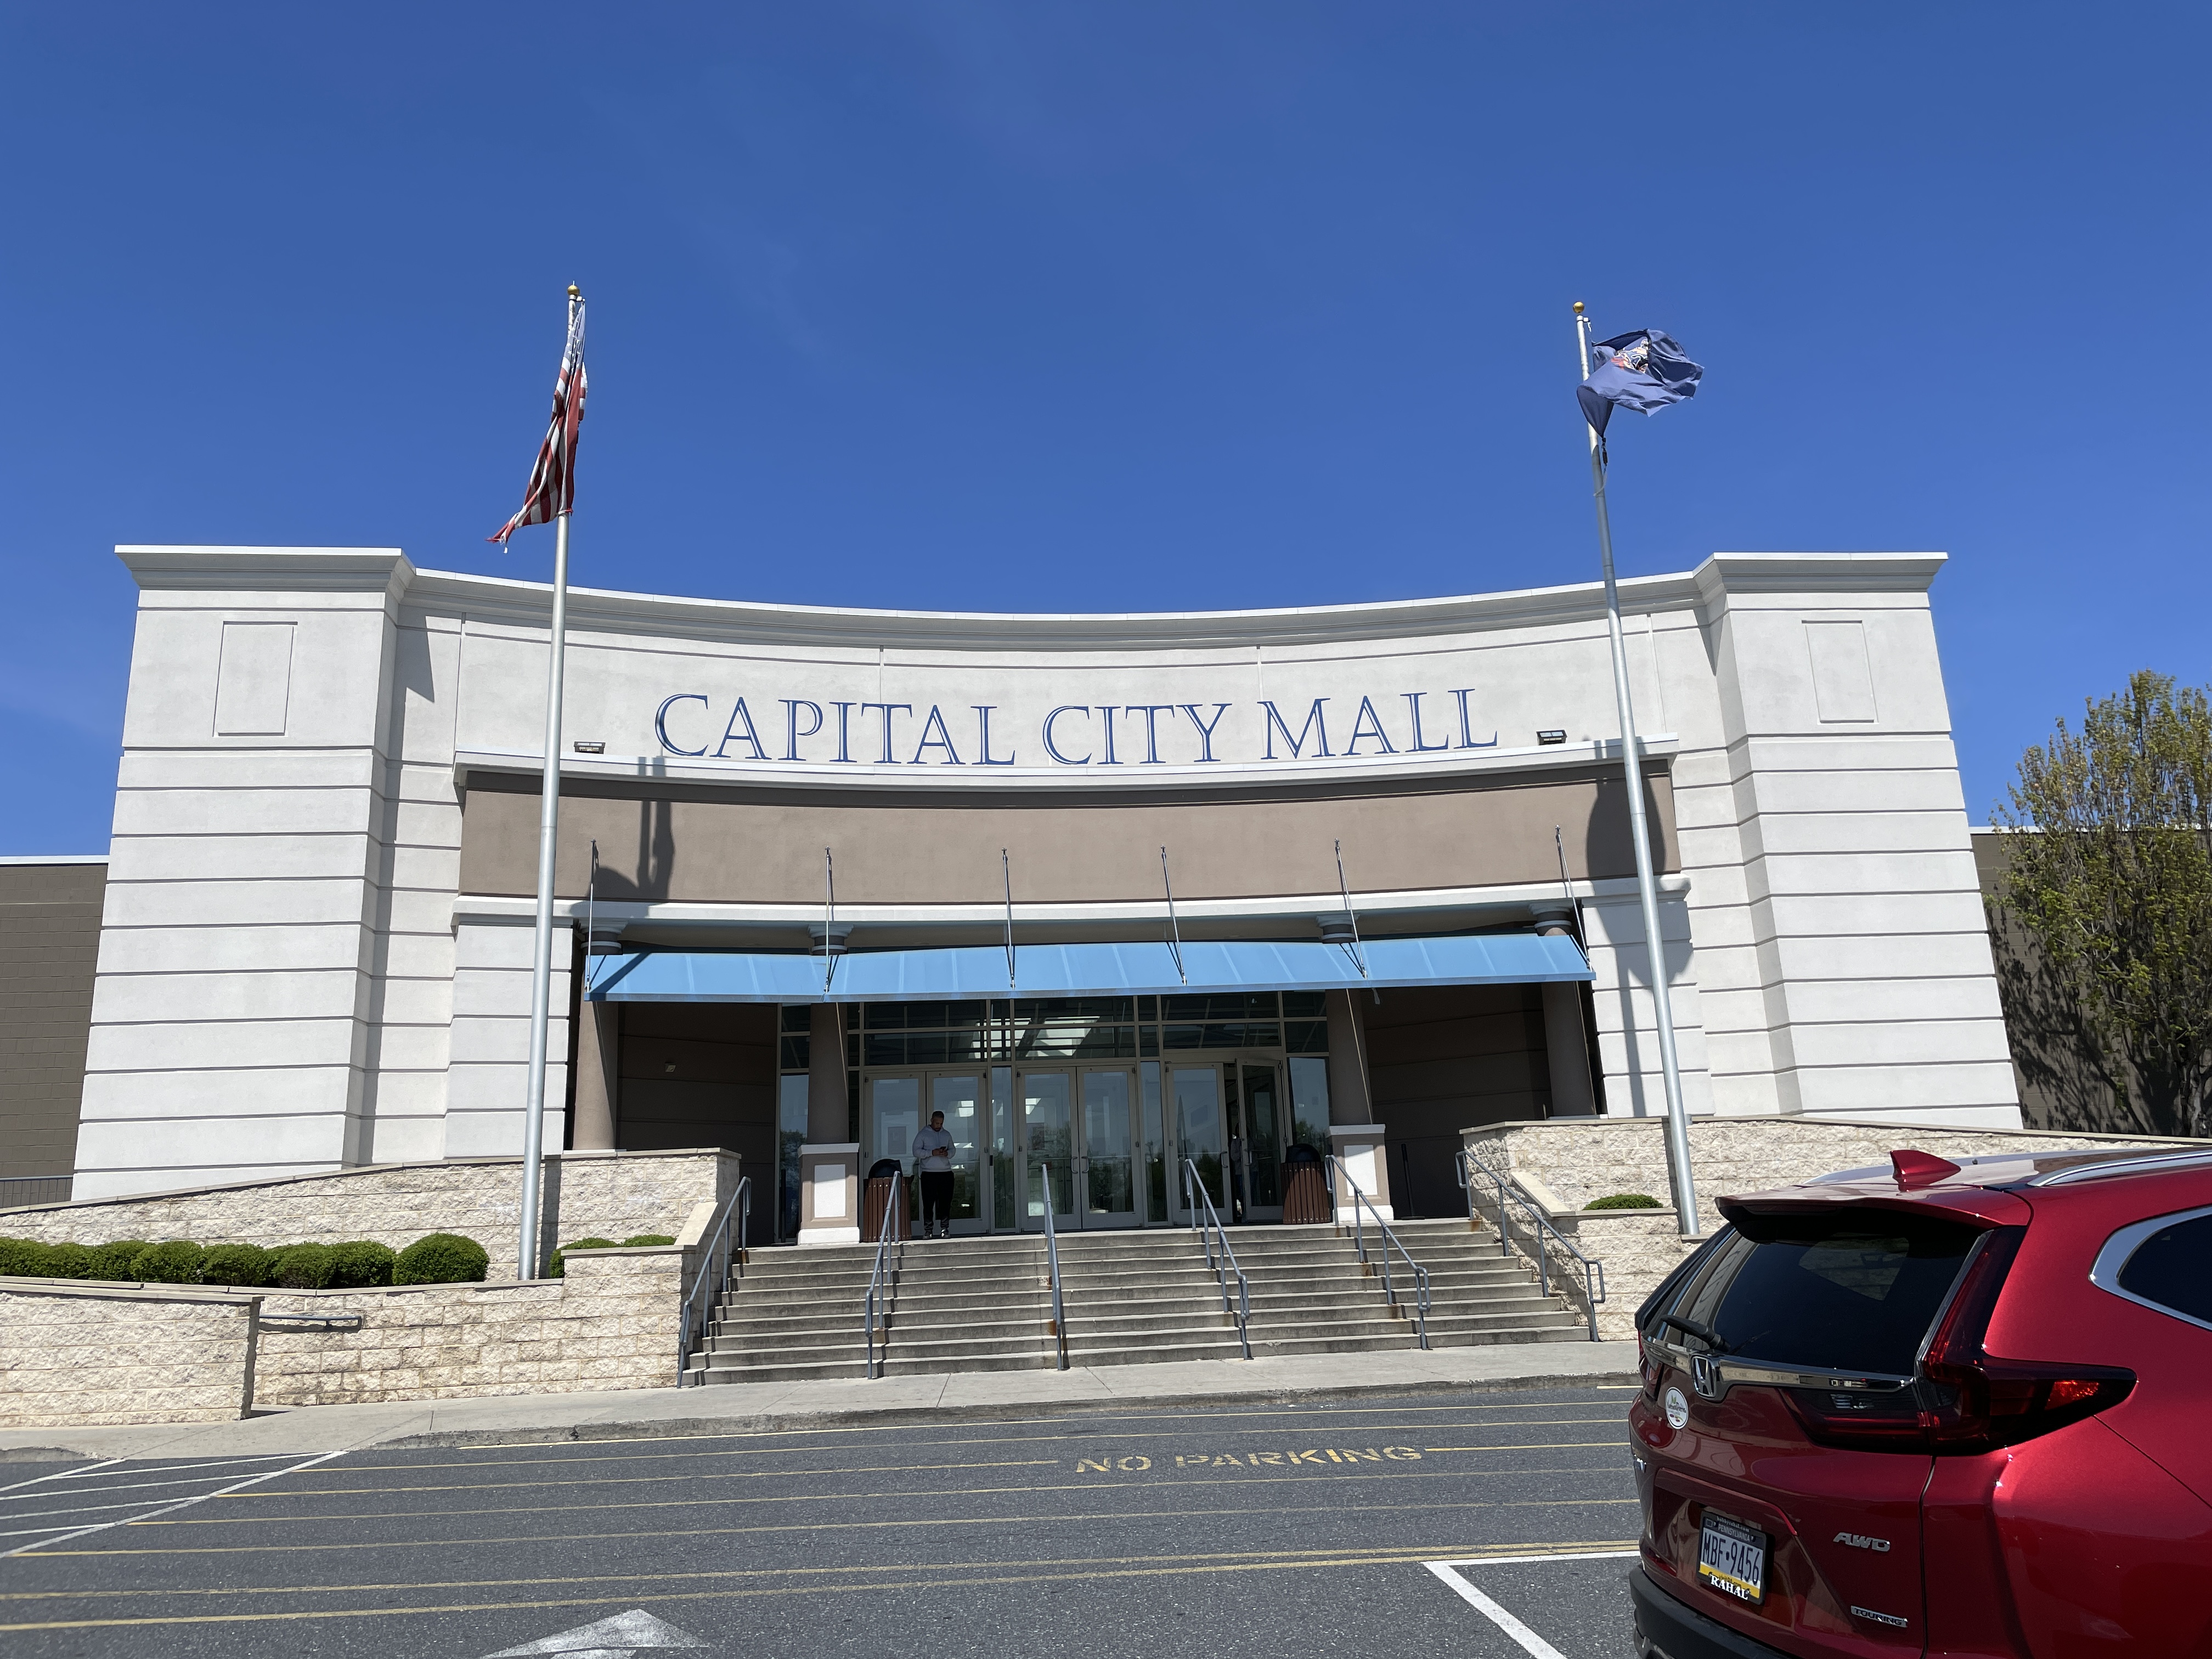 Collin Creek Mall - Wikipedia